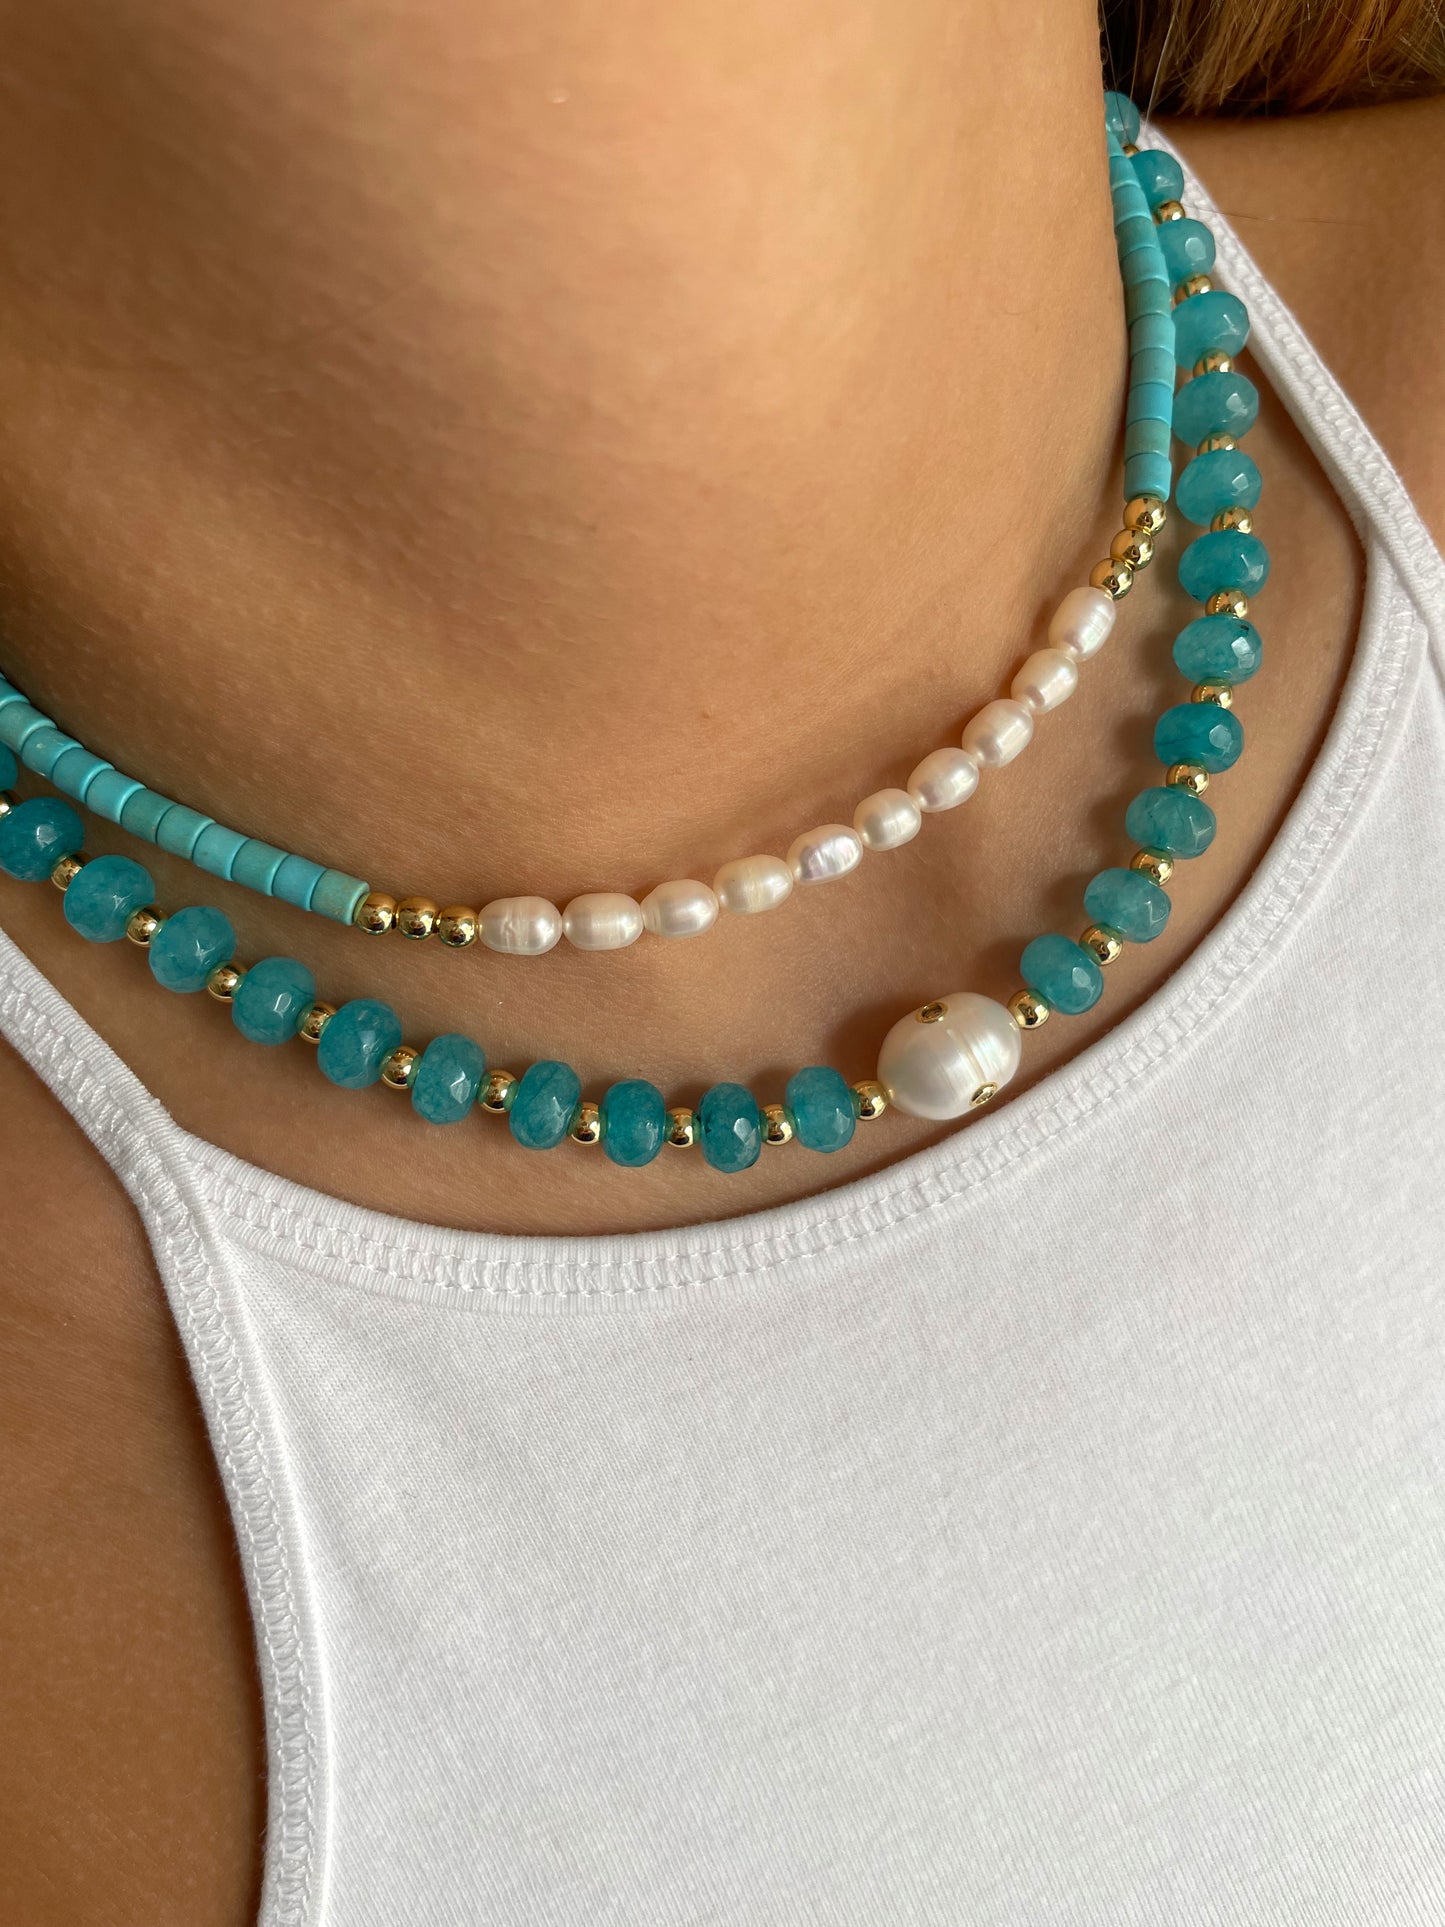 Parisian blue necklace and bracelet